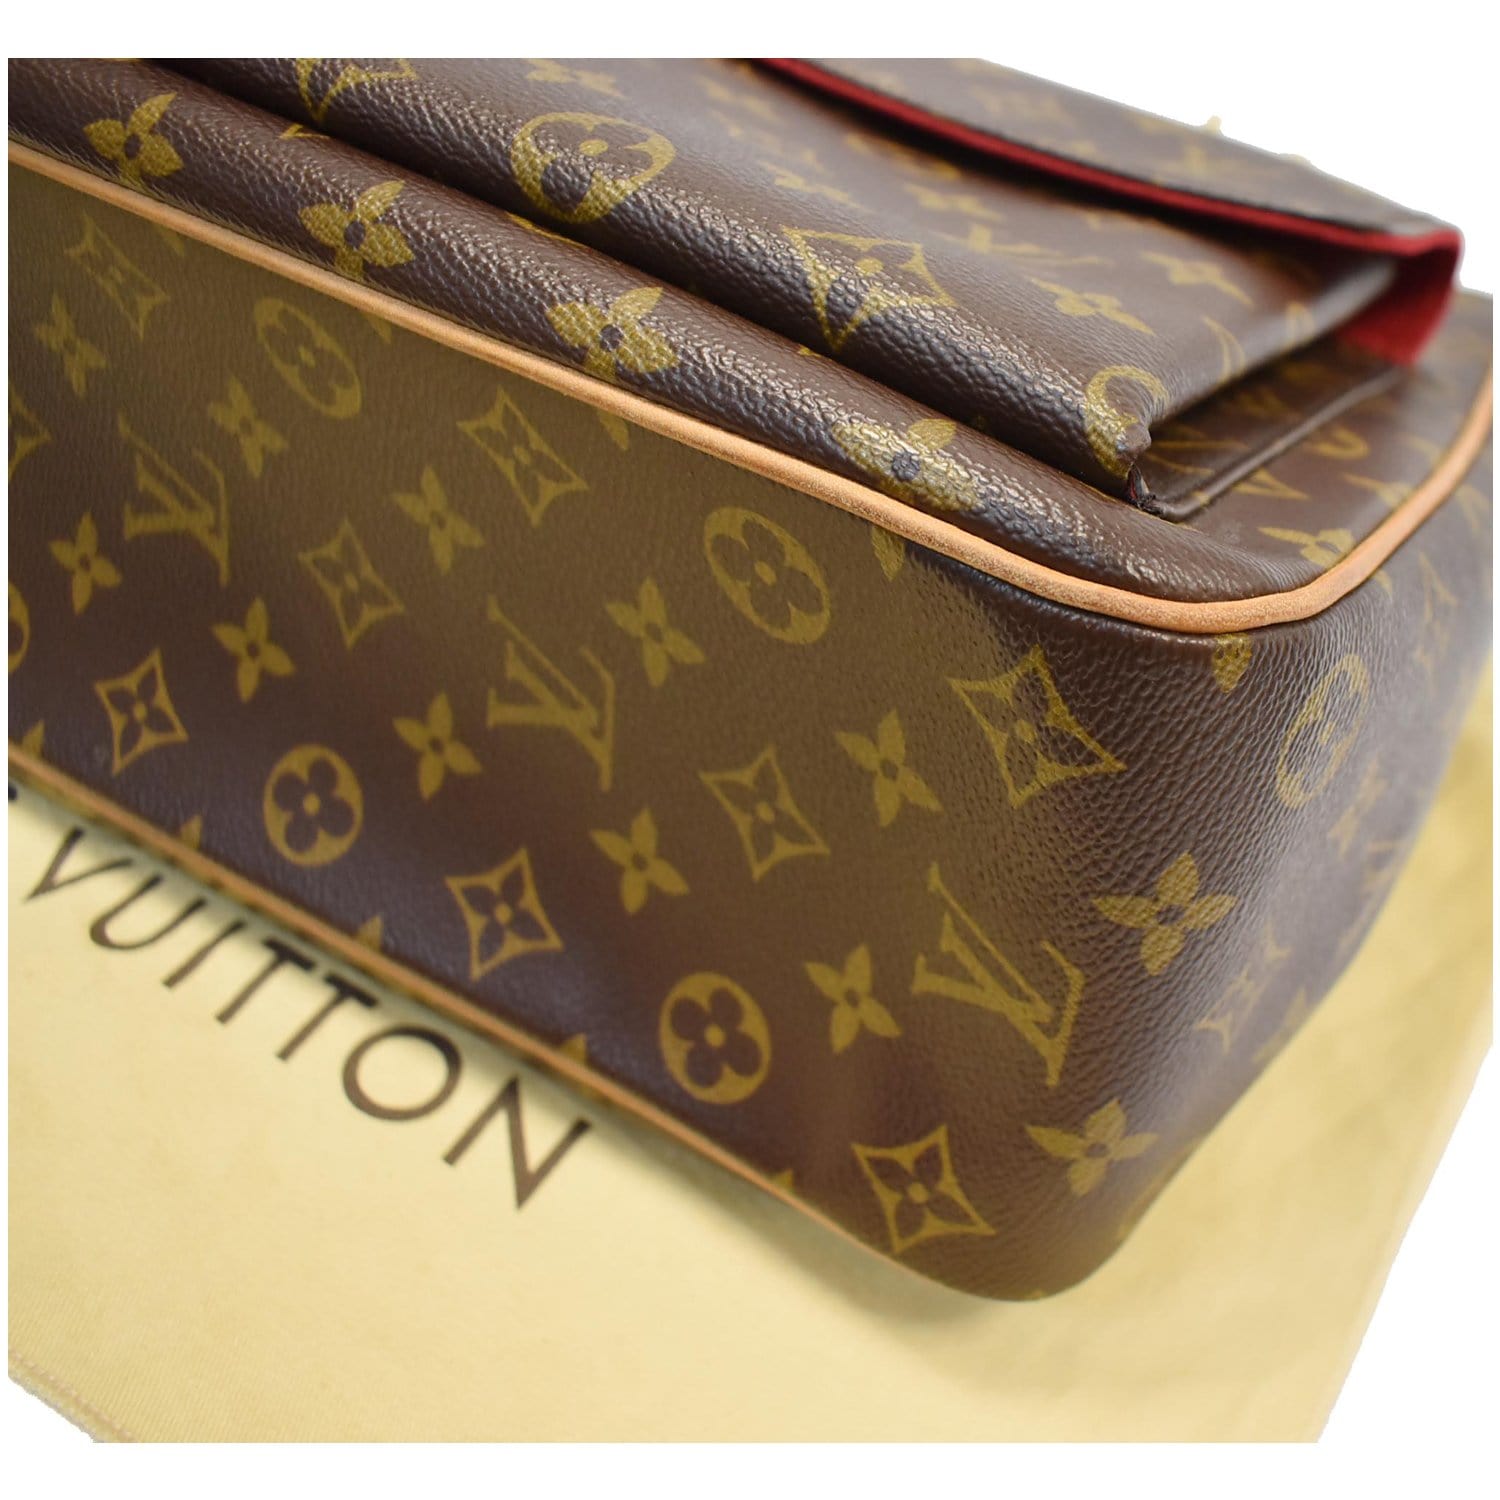 Louis Vuitton Viva Cite GM One Shoulder Bag Monogram Canvas Brown